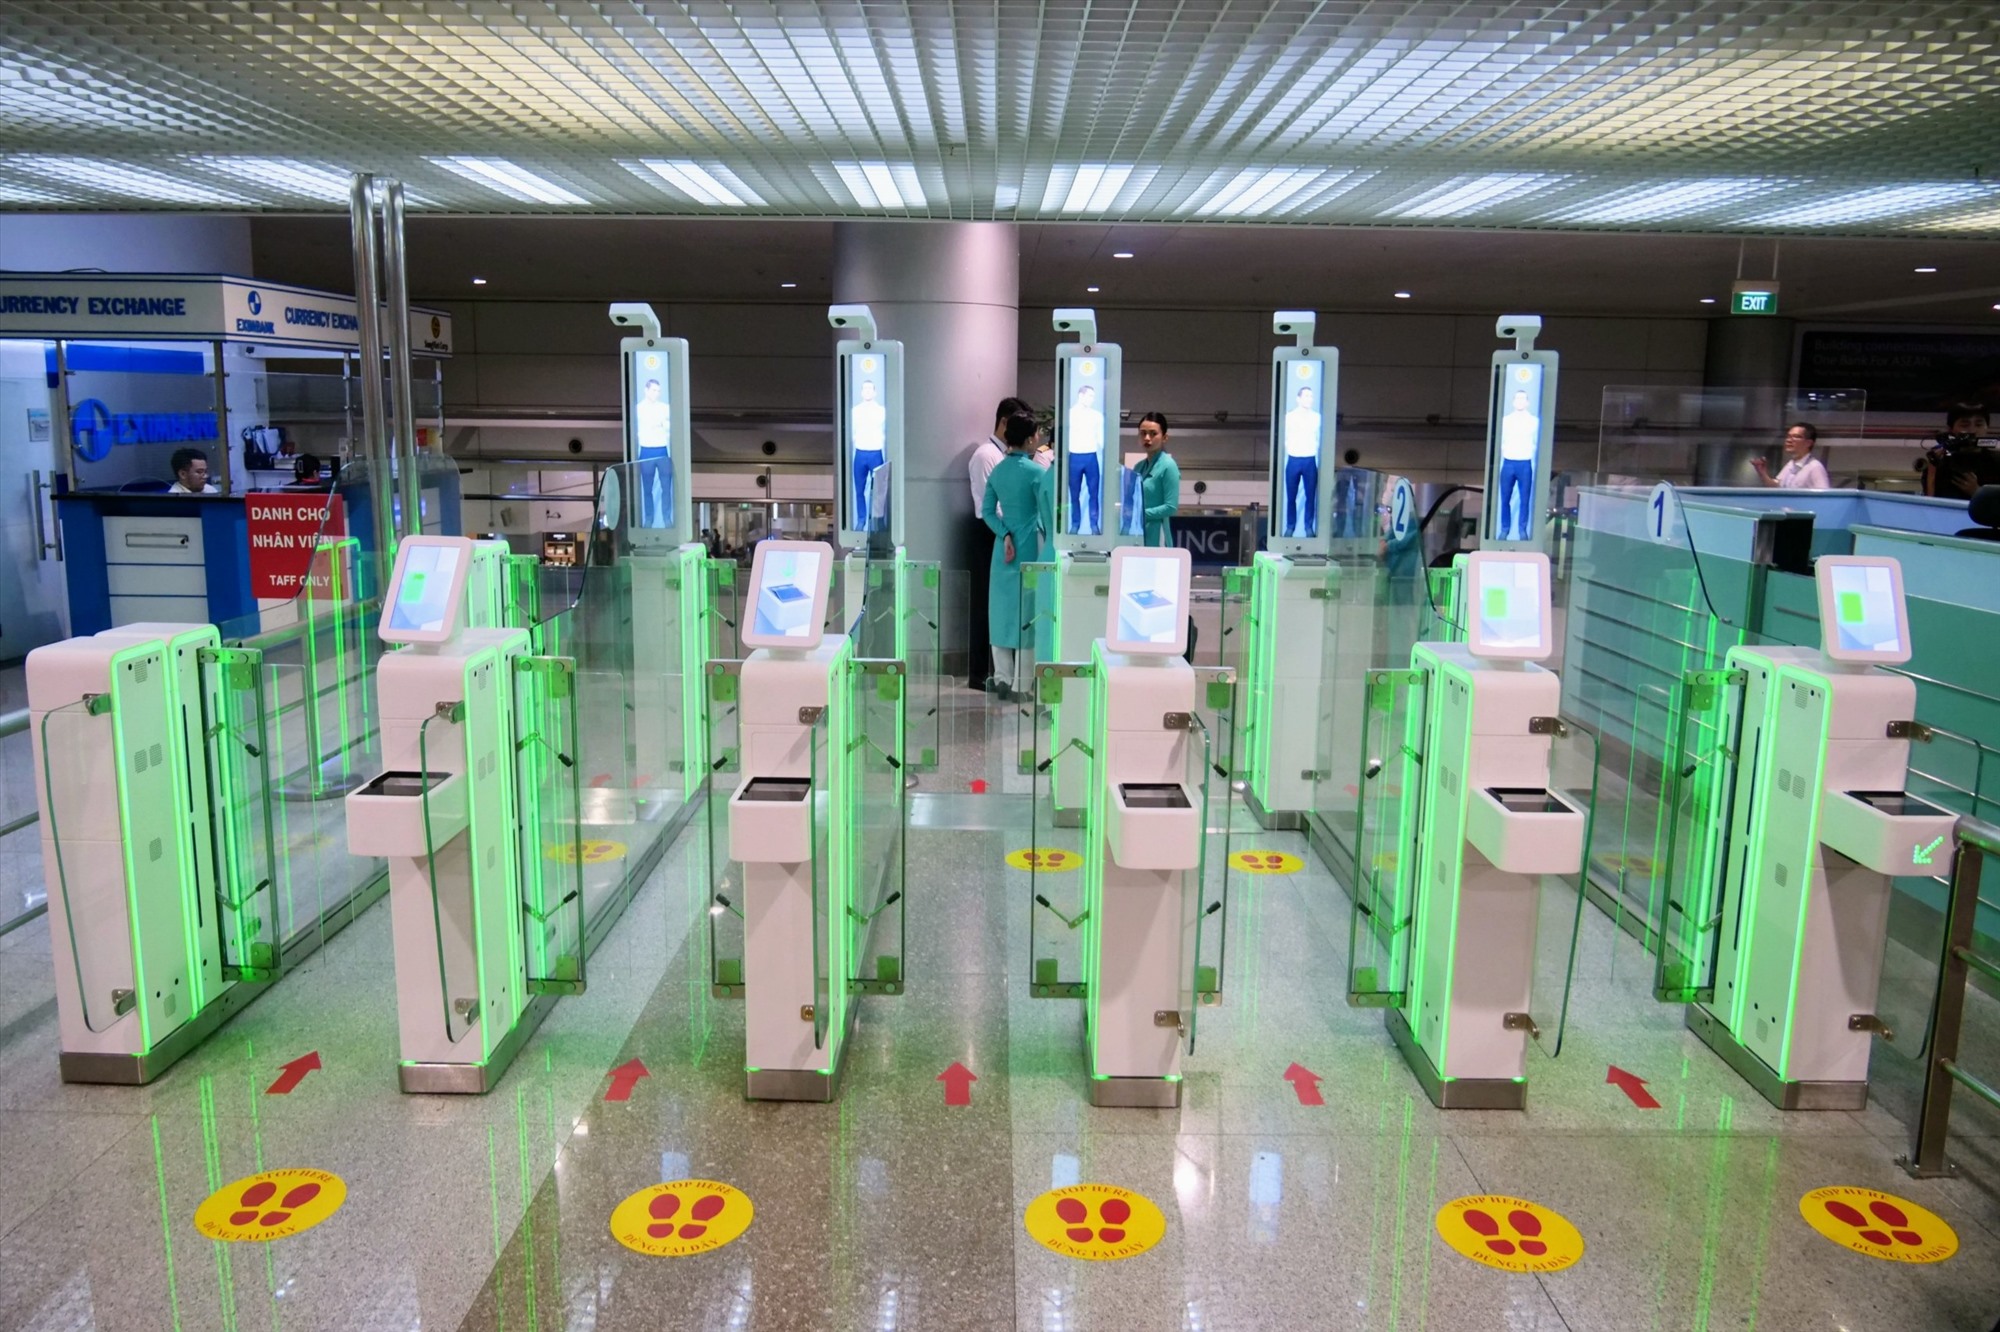 Có 10 máy quét hộ chiếu tự động autogate đã được lắp đặt và vận hành thử nghiệm ở nhà ga quốc tế, sân bay Tân Sơn Nhất, trong đó 5 máy phục vụ khách xuất cảnh và 5 máy cho khách nhập cảnh. 